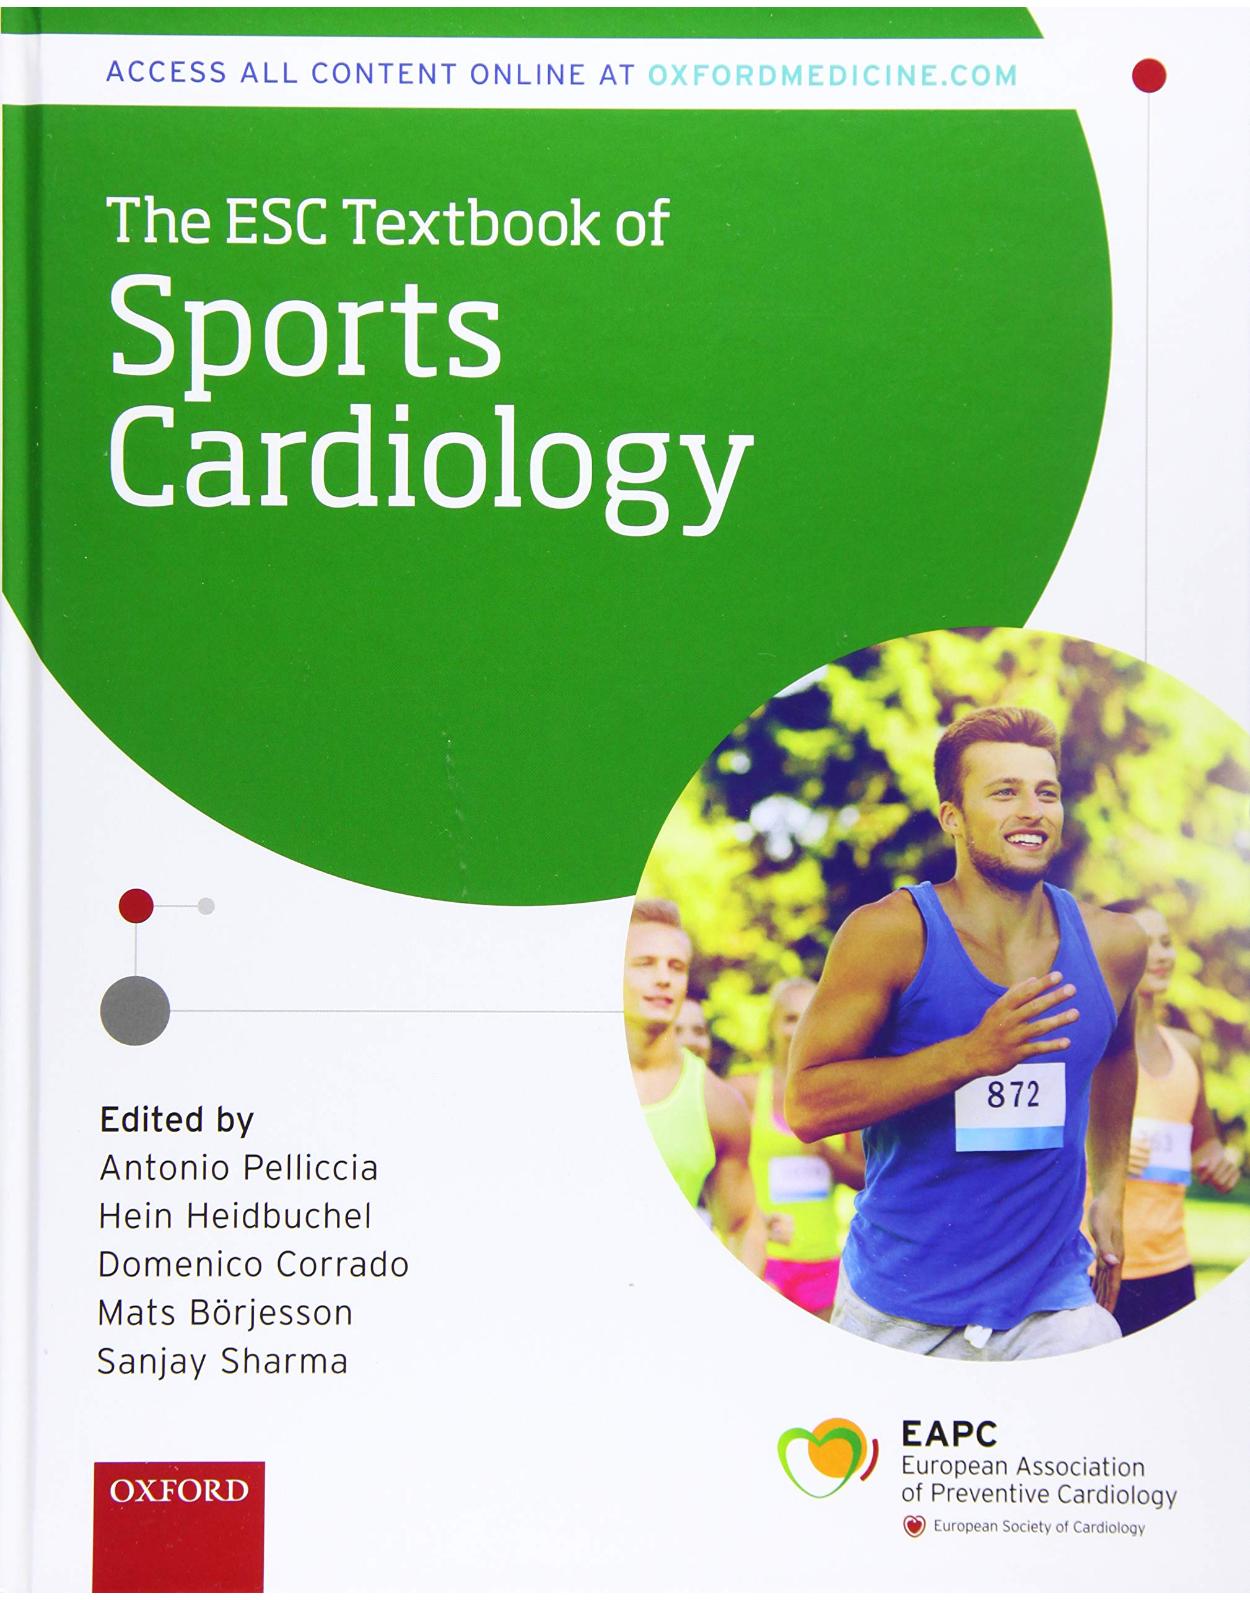 Esc Textbook of Sports Cardiology